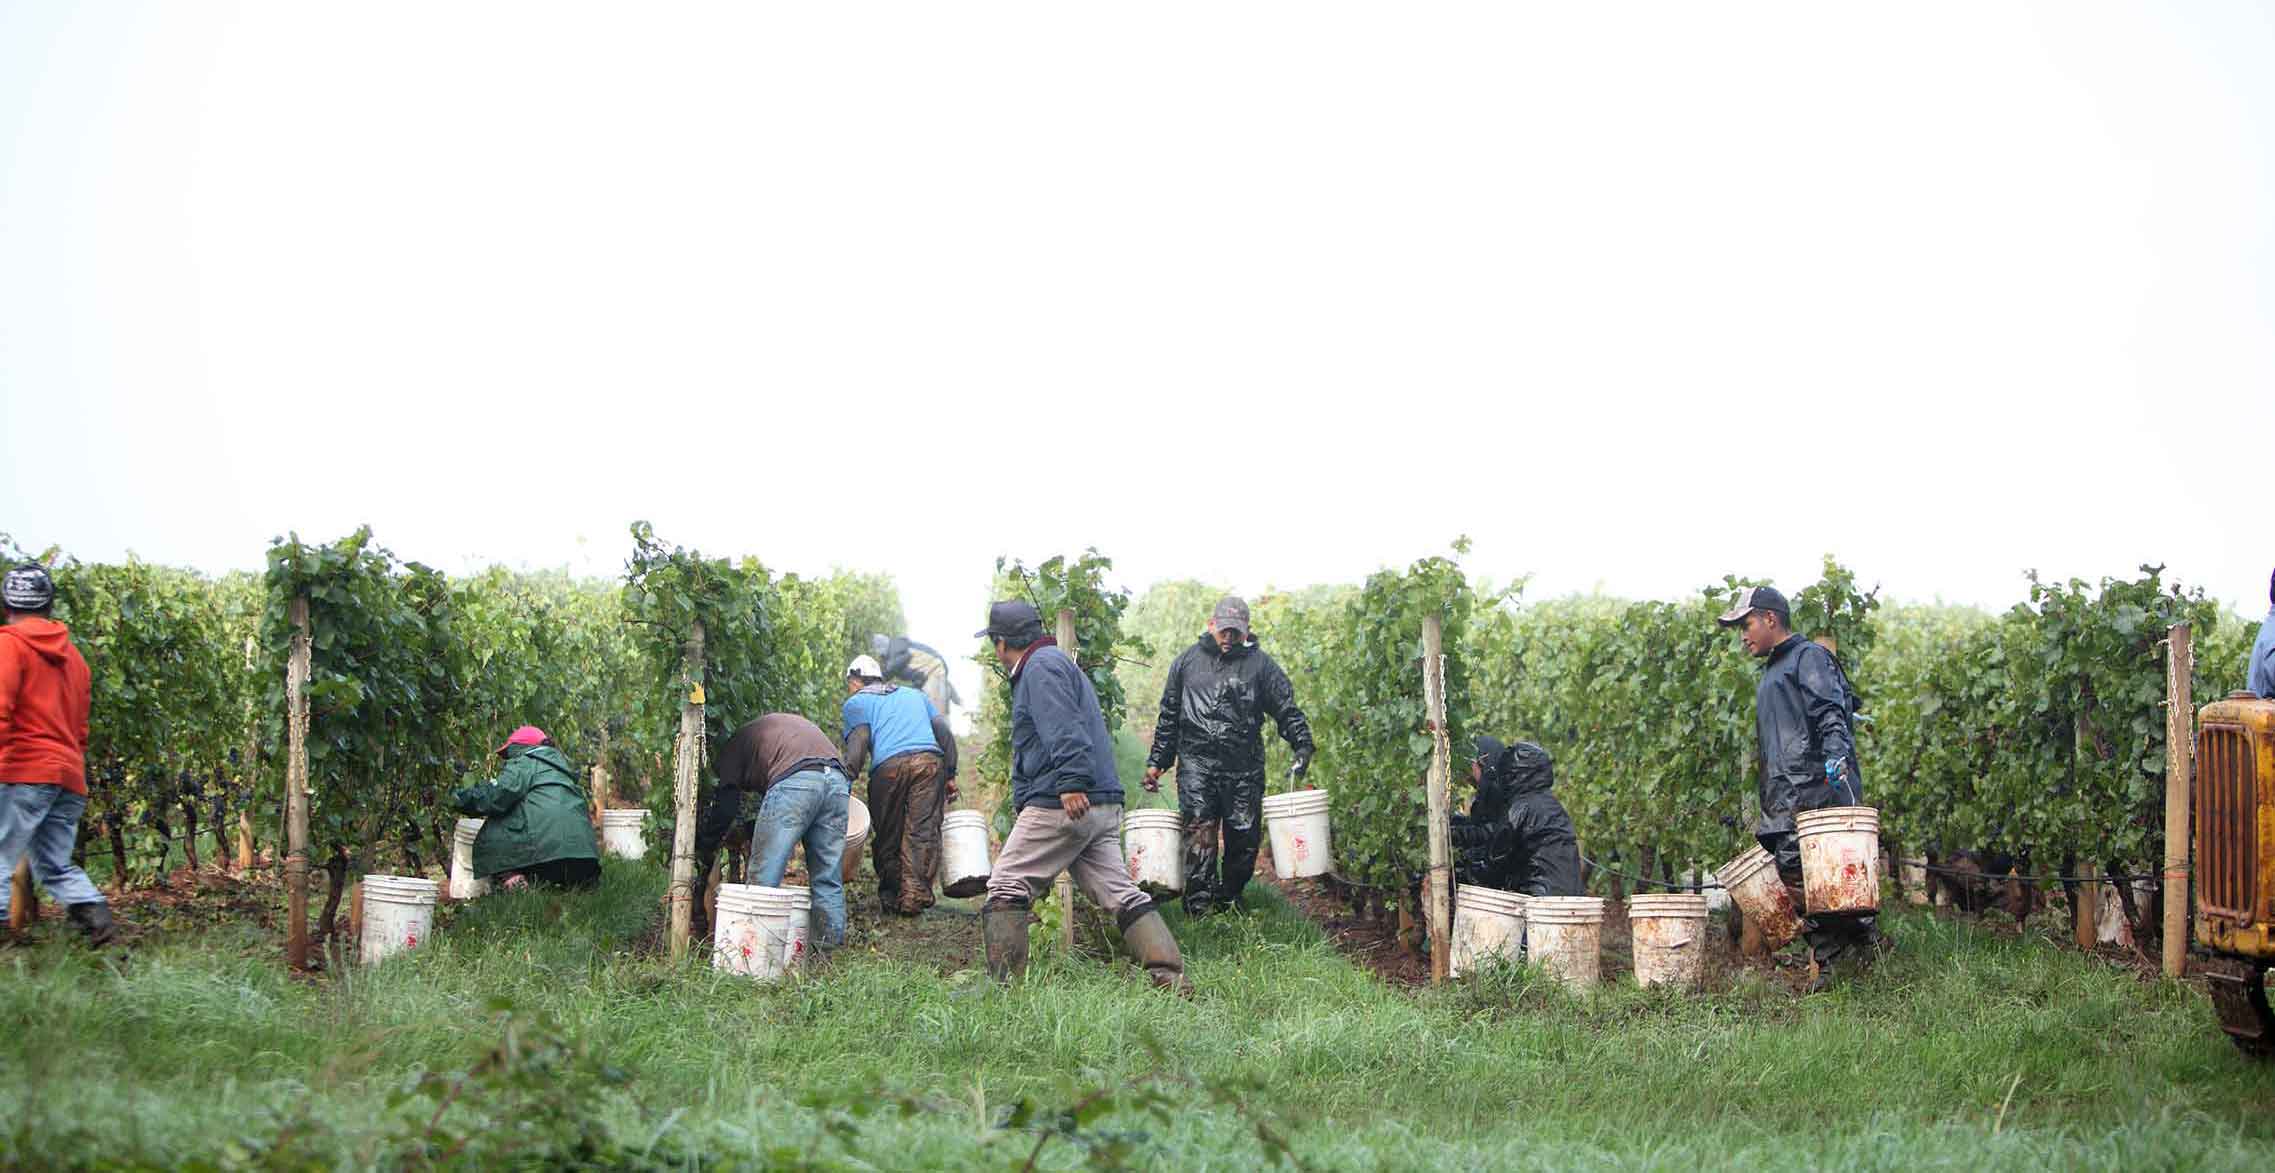 grape harvesters working in vineyard